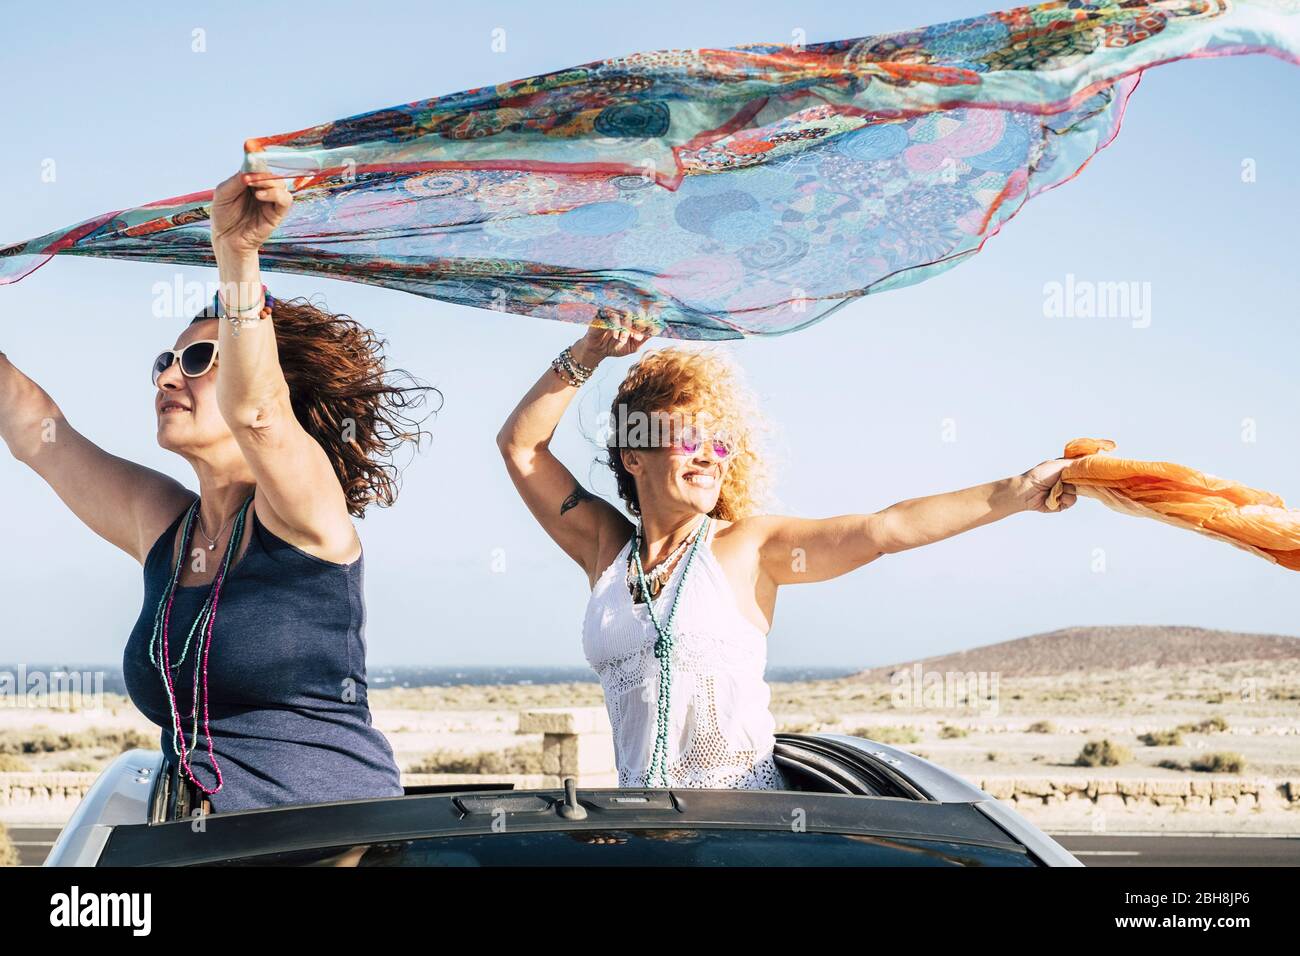 Un paio di donne si divertono e giocano con il vento che si alza dalla cima di una vettura convertibile e giocando con il vento con parei colorati - gente allegra che viaggia e che si gode l'aria aperta in vacanza Foto Stock